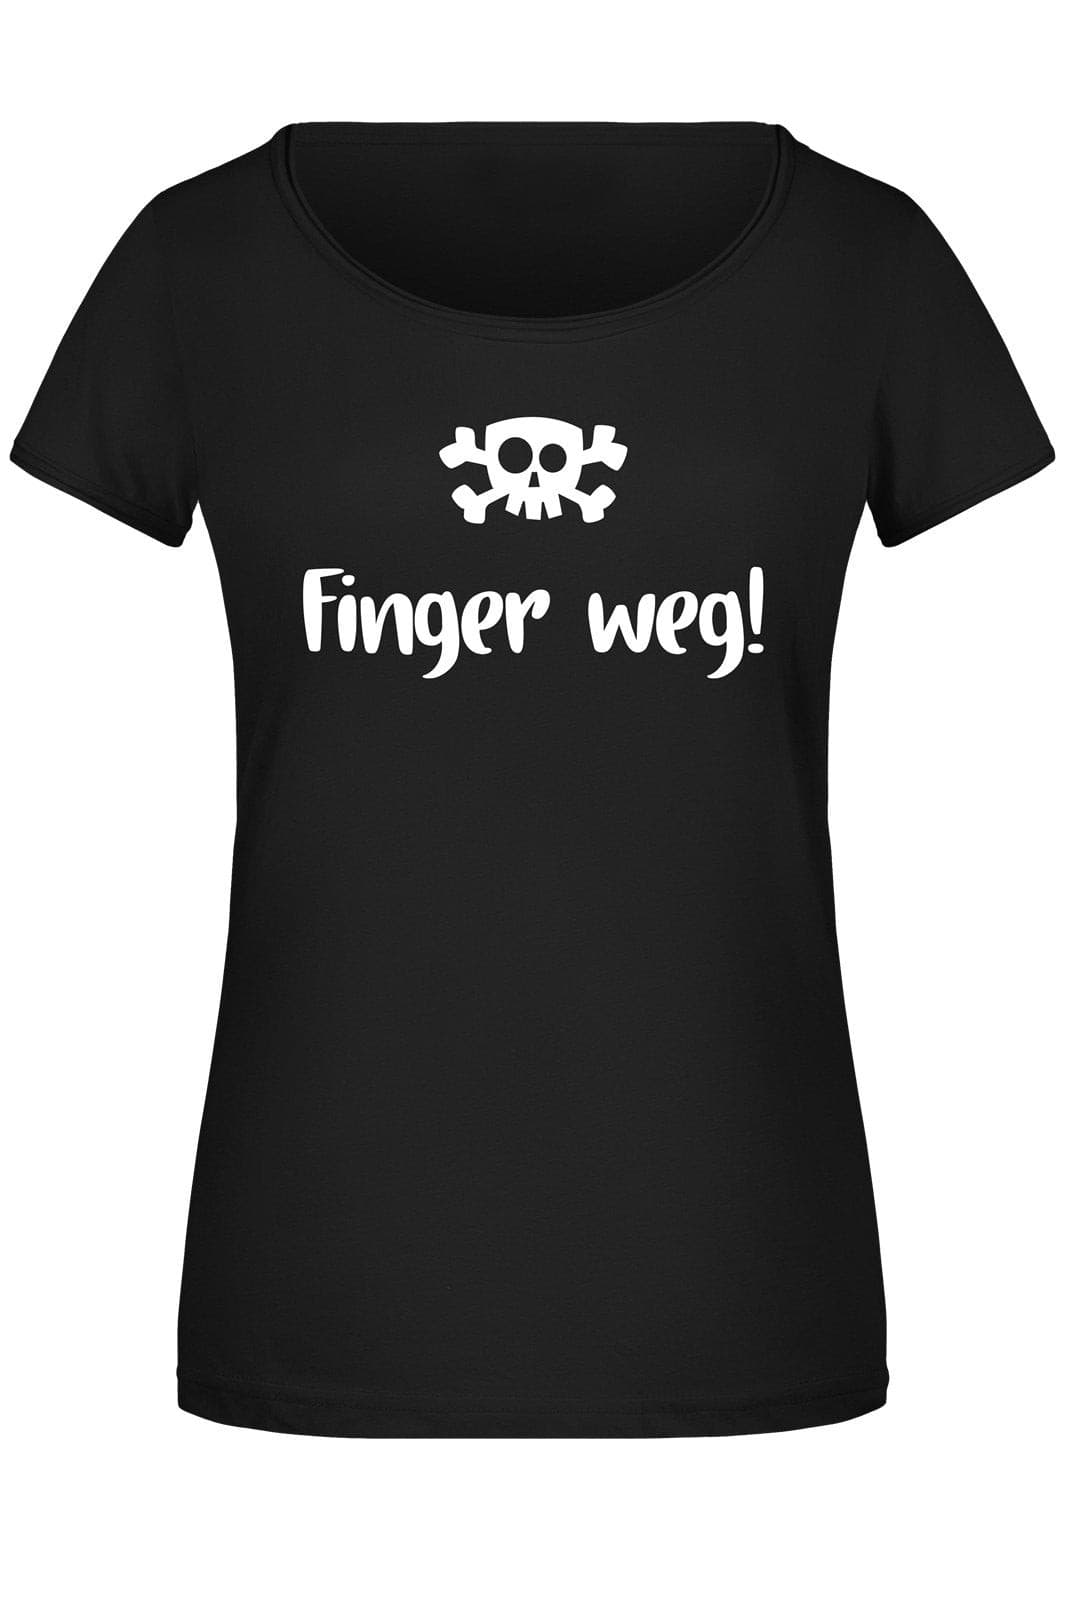 Bild: T-Shirt Damen - Finger weg! Totenkopf Geschenkidee